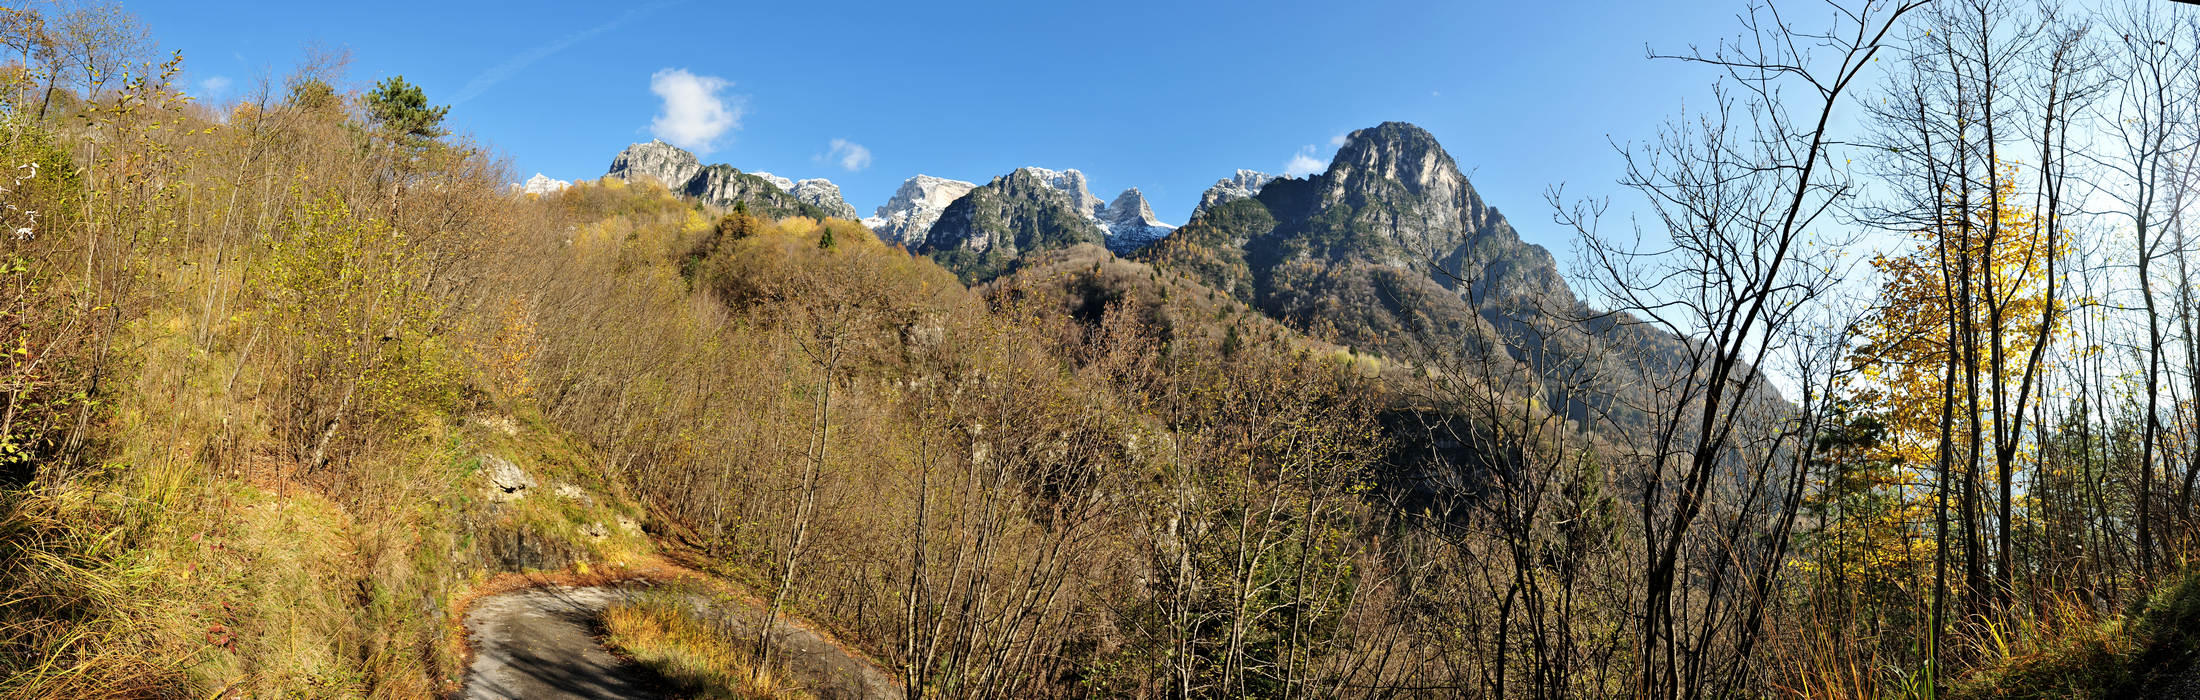 Le Gene nella Valle del Mis, Parco Nazionale Dolomiti Bellunesi